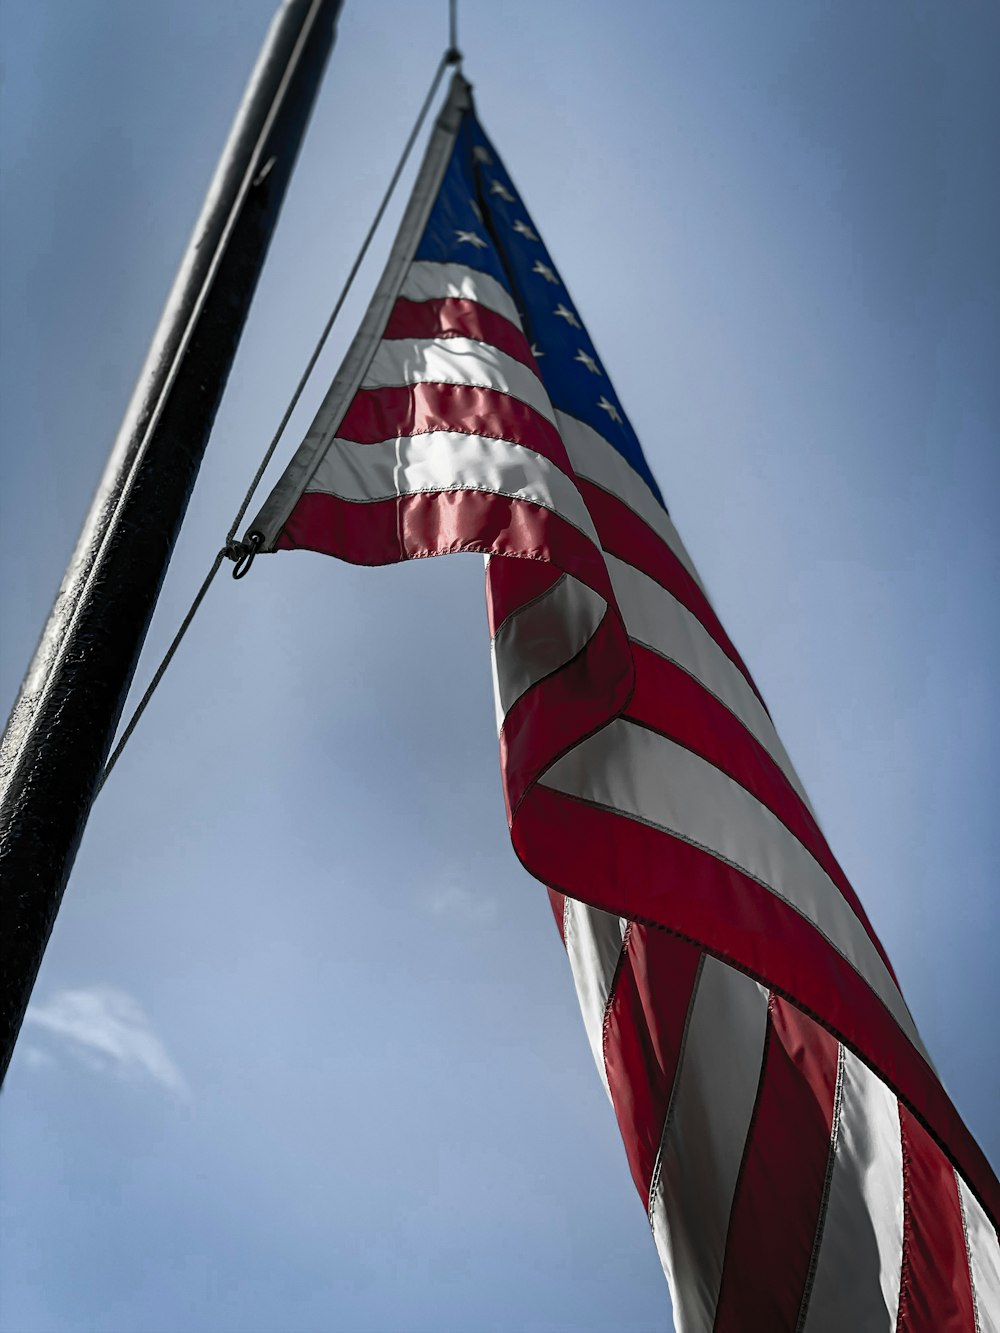 American flag on pole